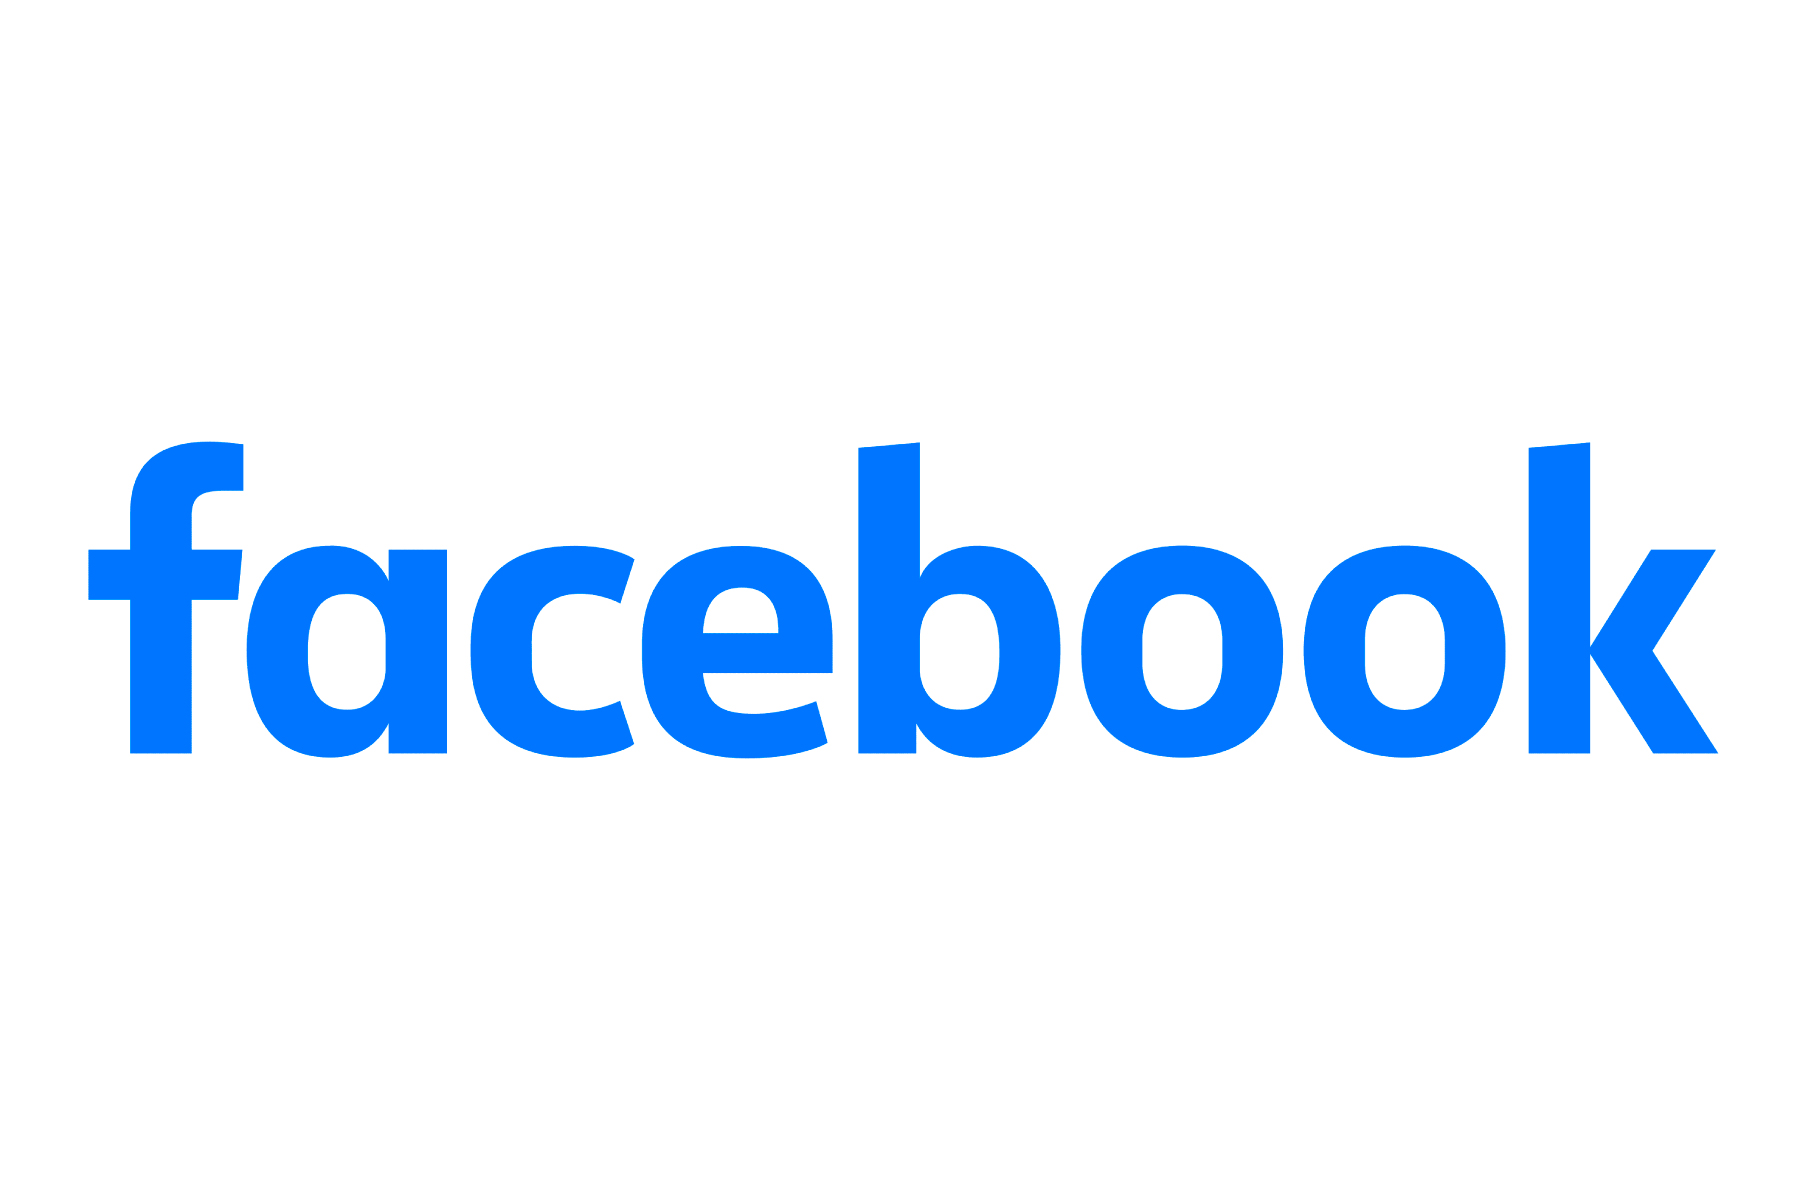 Facebook blue lowercase logotype.